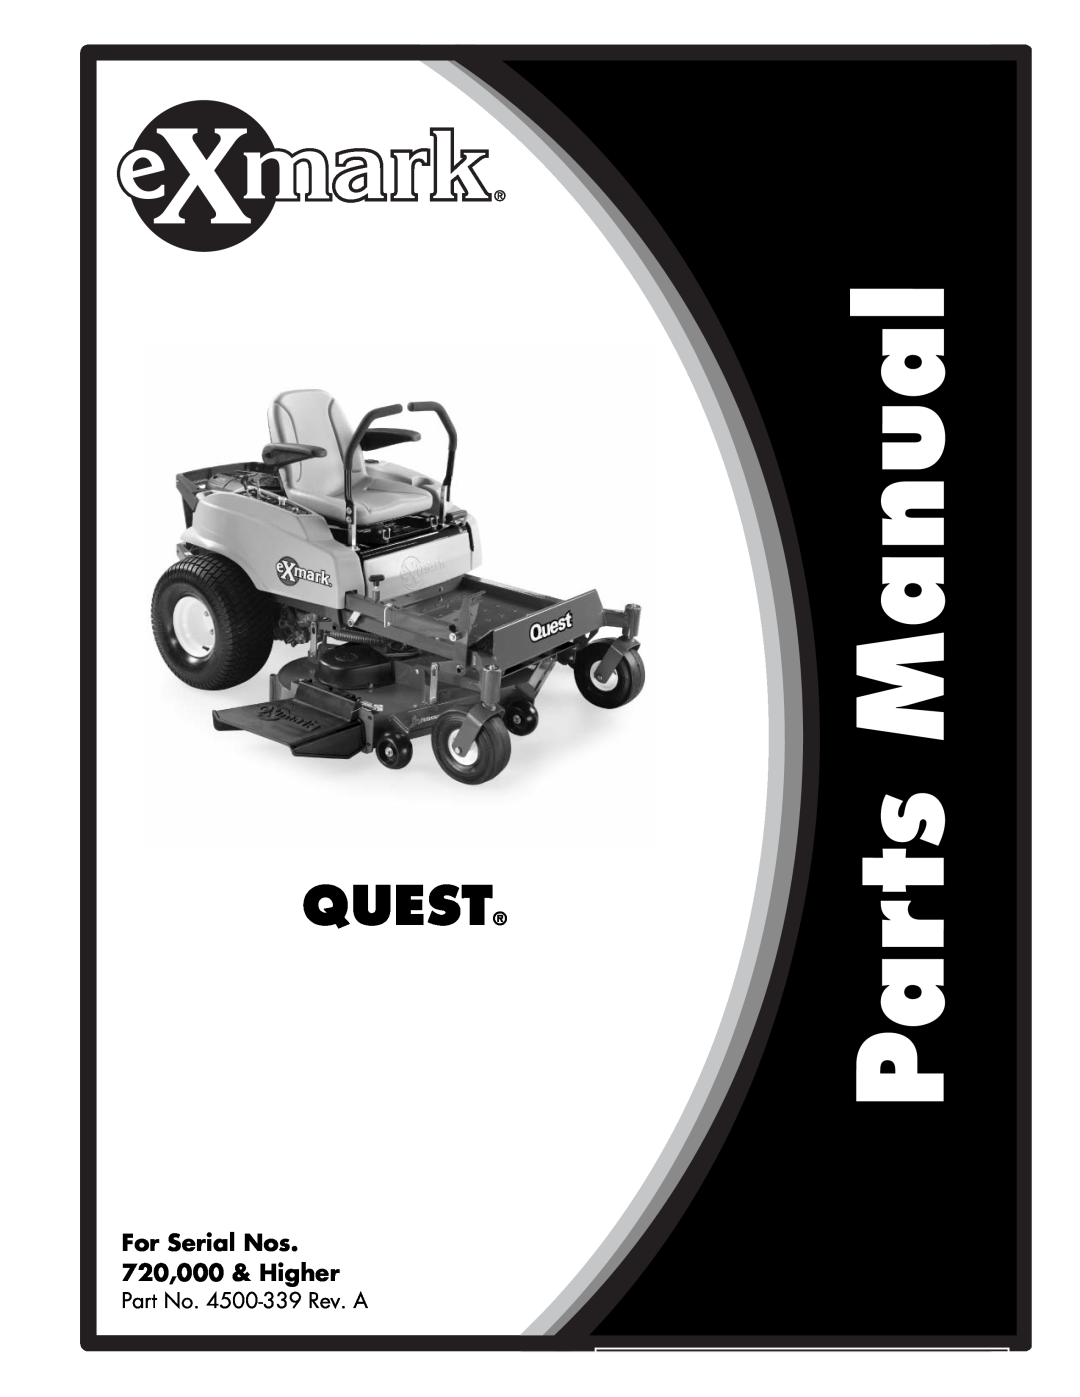 Exmark manual Quest, For Serial Nos 720,000 & Higher, Part No. 4500-339Rev. A 